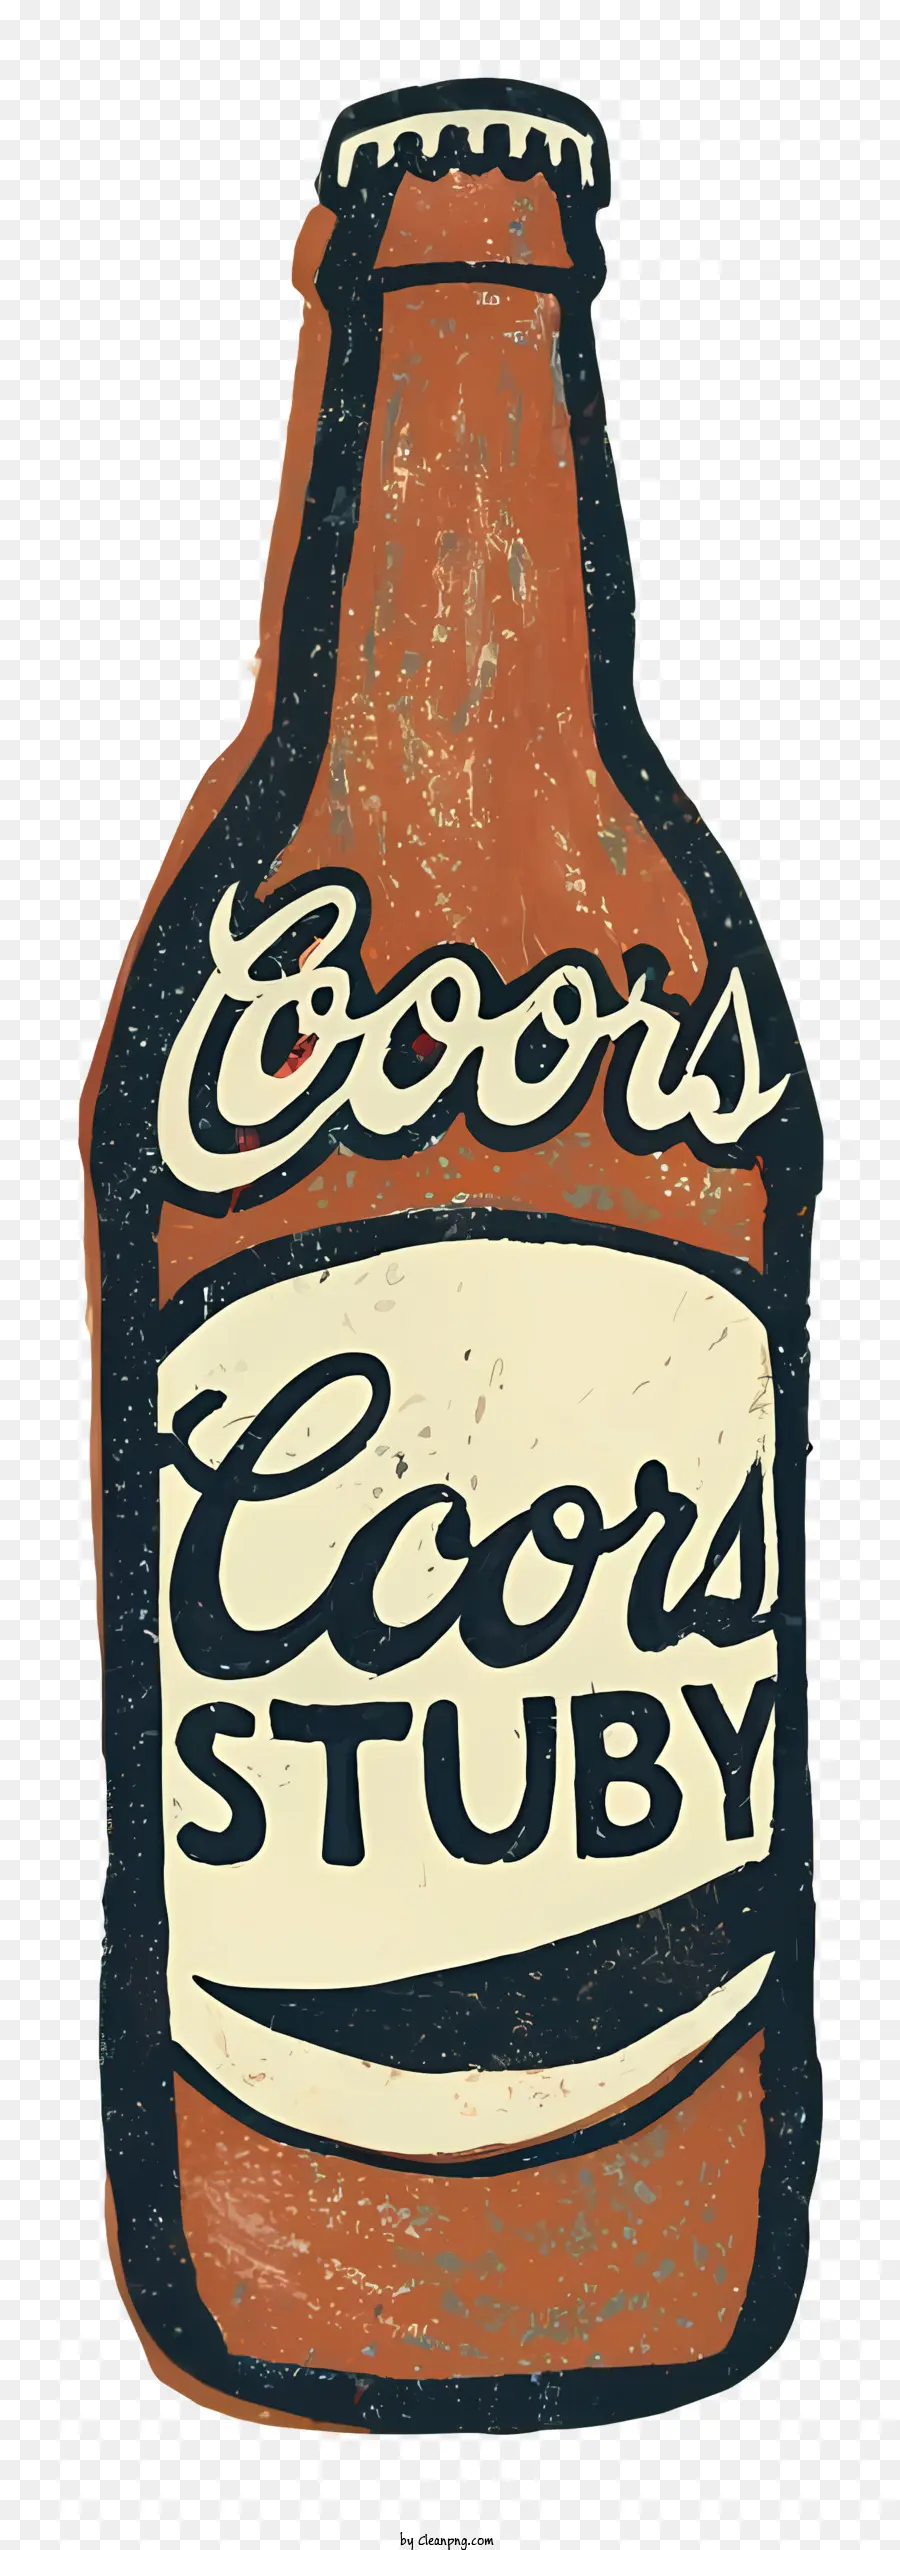 Cobra Stud Bier Clear Glasflasche Brown Etikett handgeschrieben - Eine Vintage, klare Glasbierflasche mit der Bezeichnung 